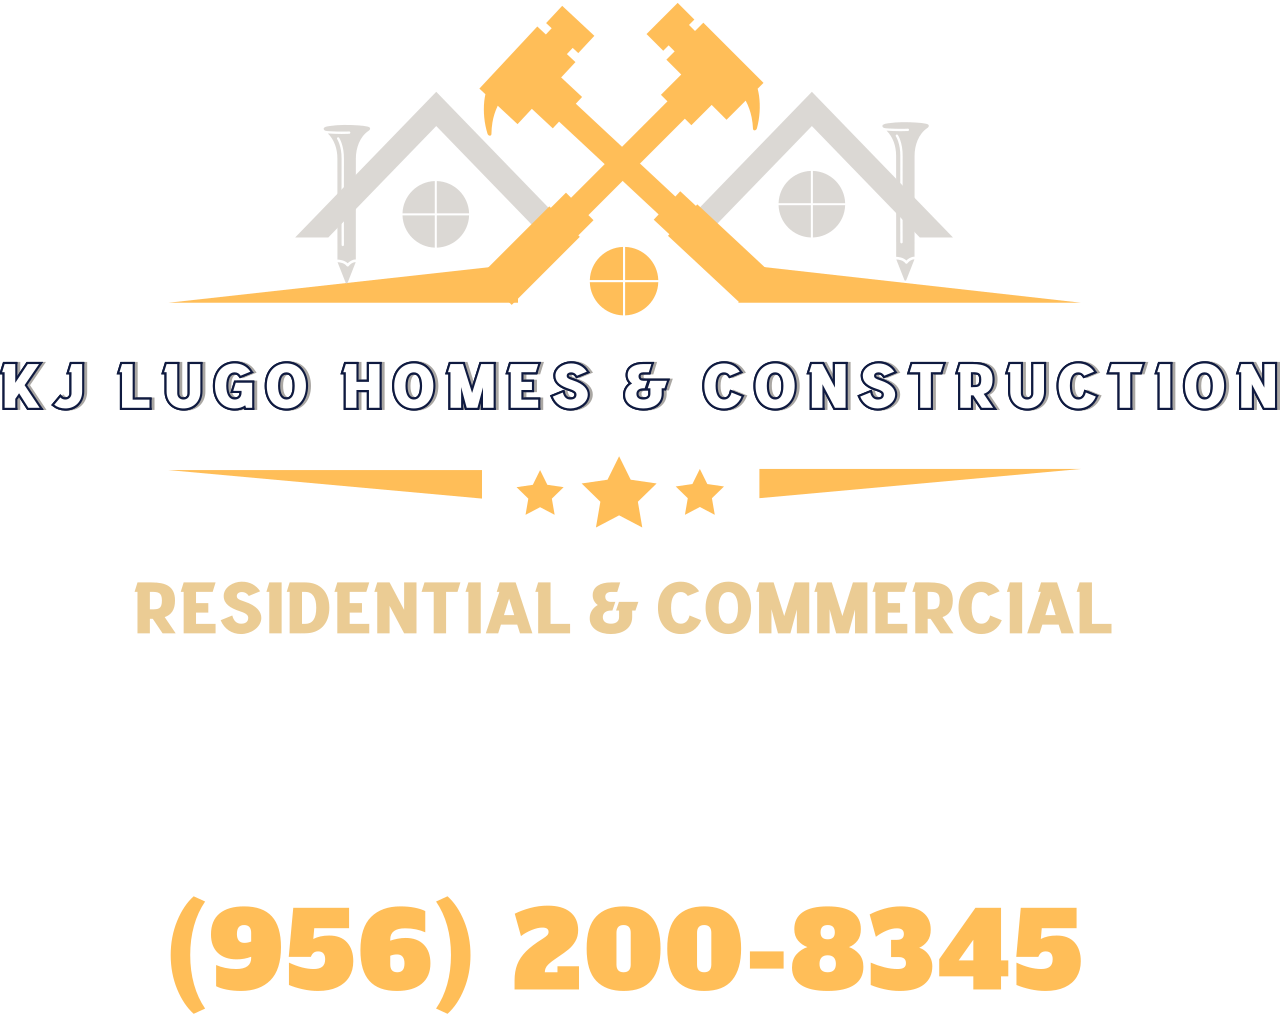 KJ Lugo Homes & Construction 's logo